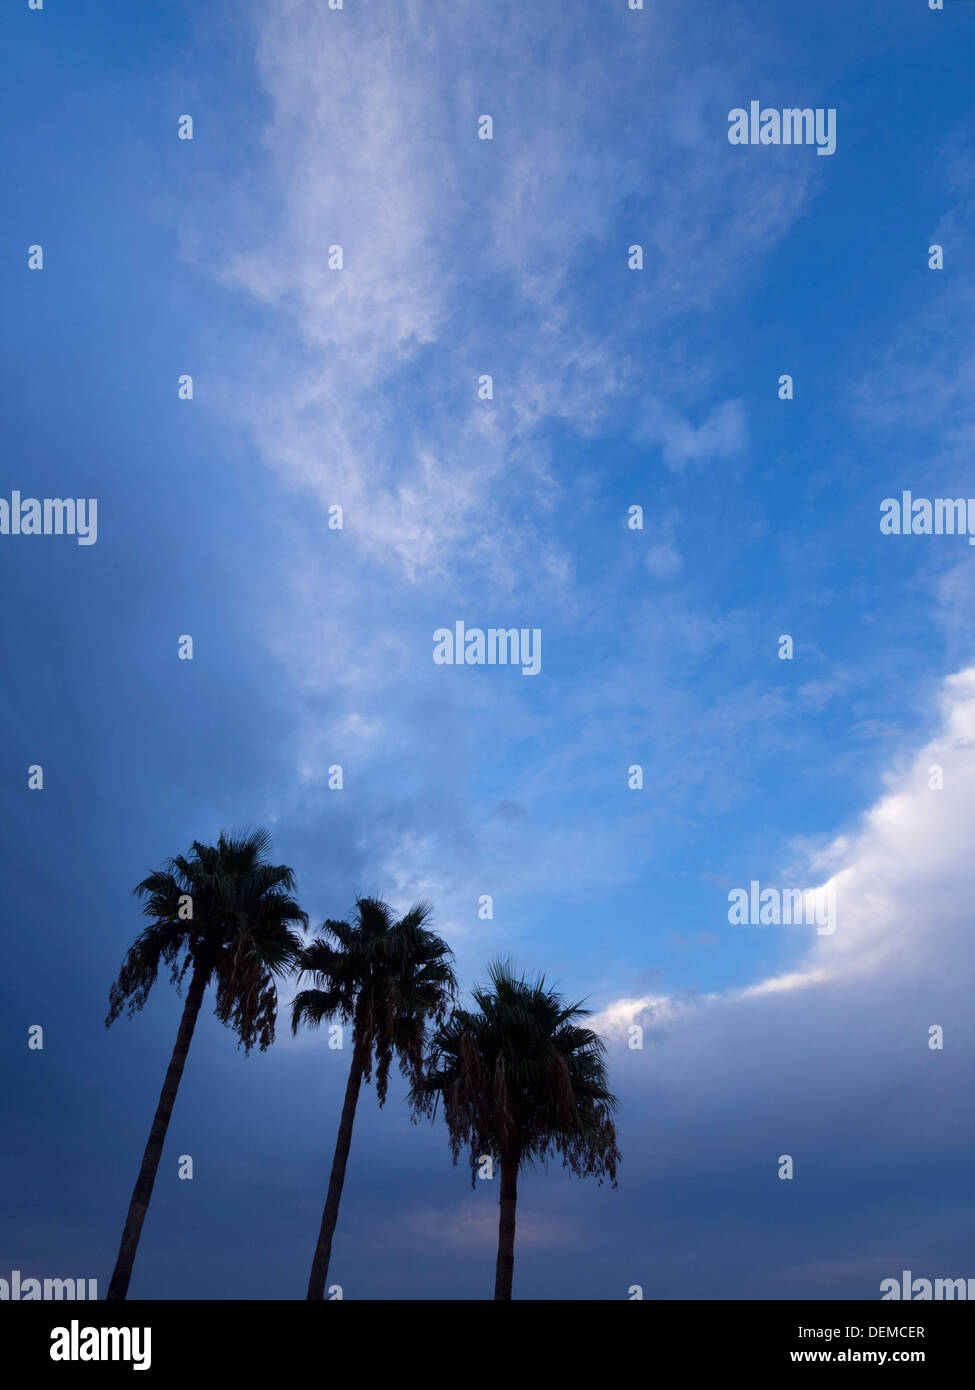 Drei Palmen Silhouette gegen einen blauen Himmel Stockfoto